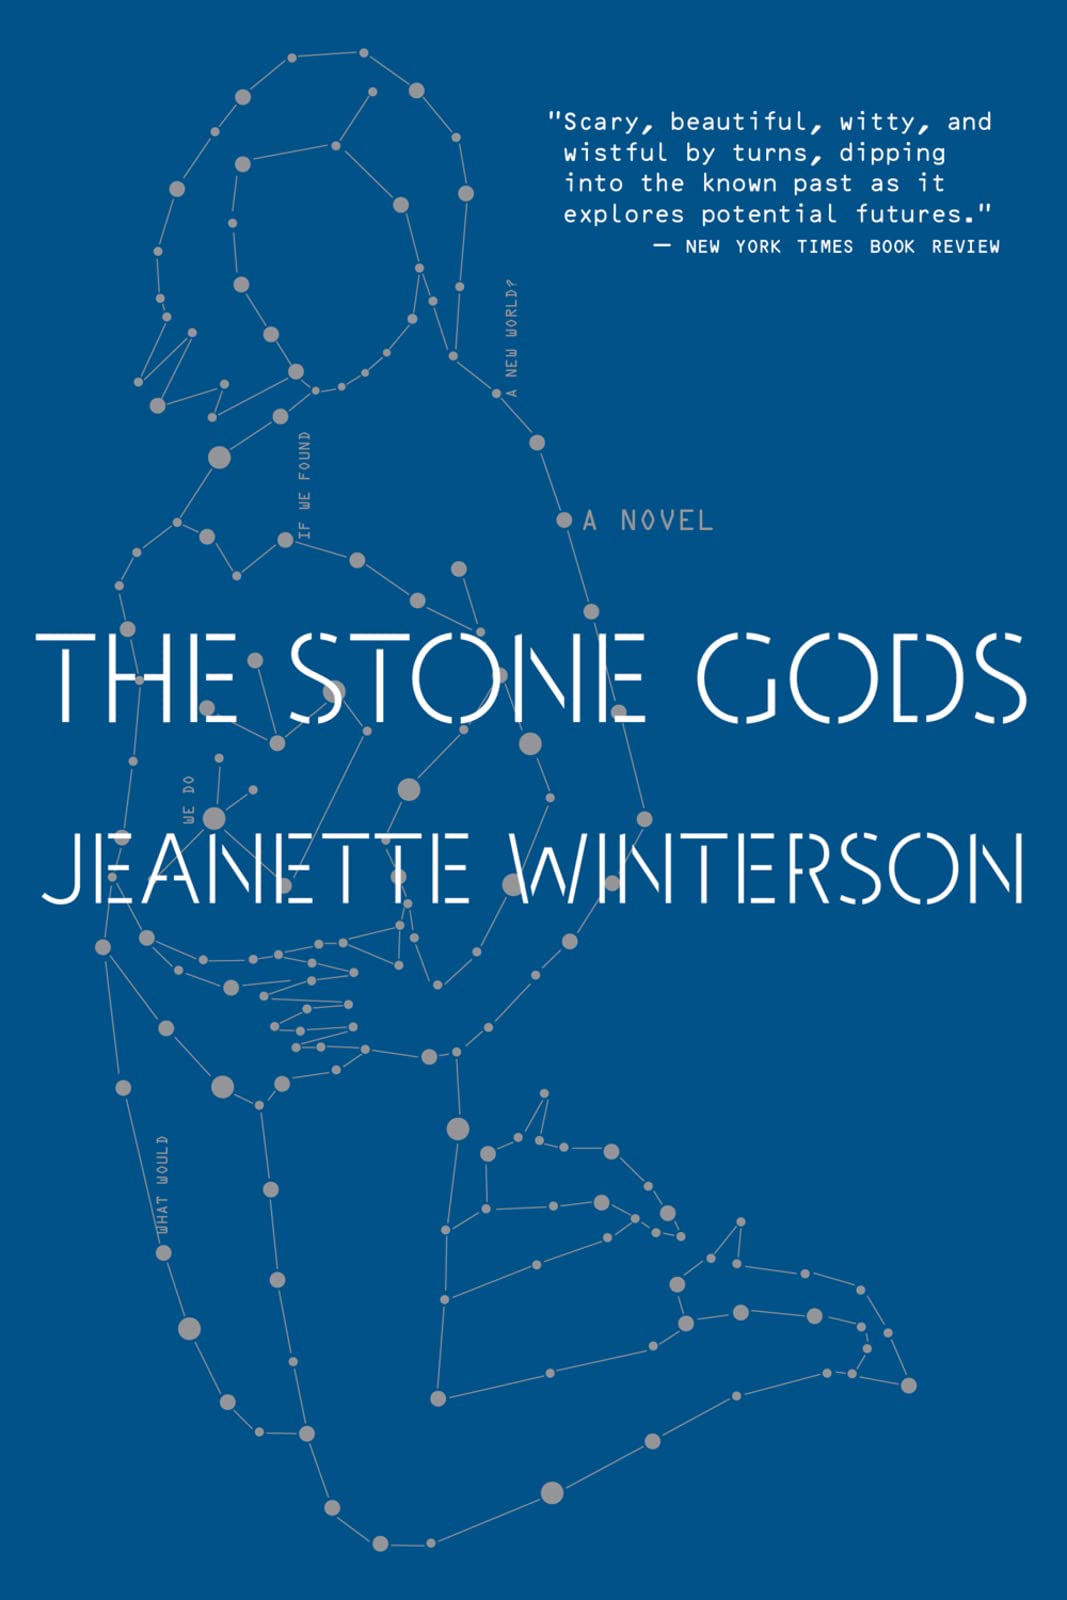 Jeanette Winterson: The stone gods (2007, Hamish Hamilton)